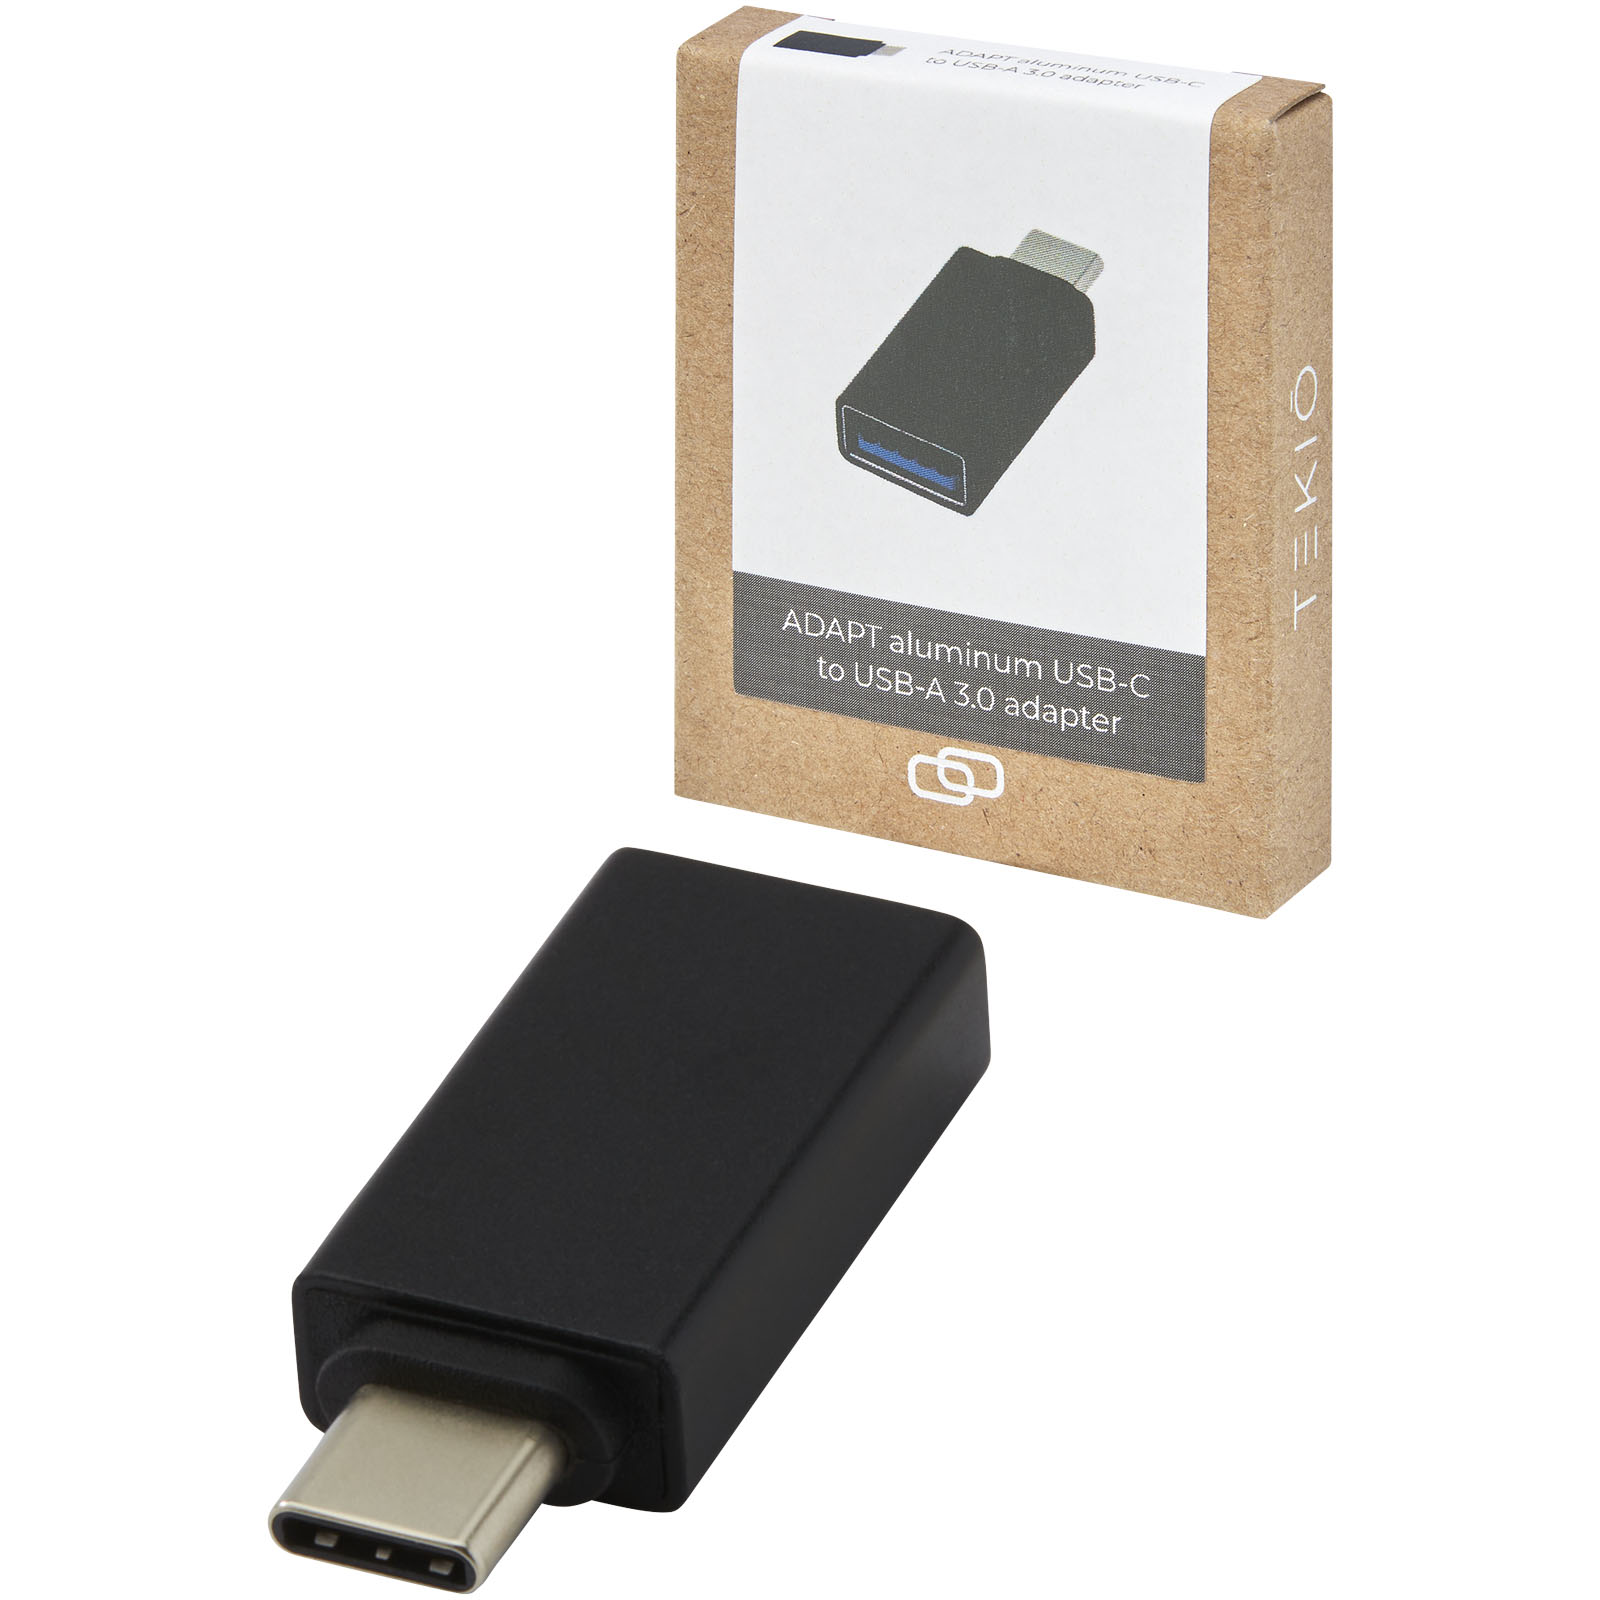 Accessoires pour ordinateur publicitaires - Adaptateur ADAPT en aluminium USB-C vers USB-A 3.0 - 4